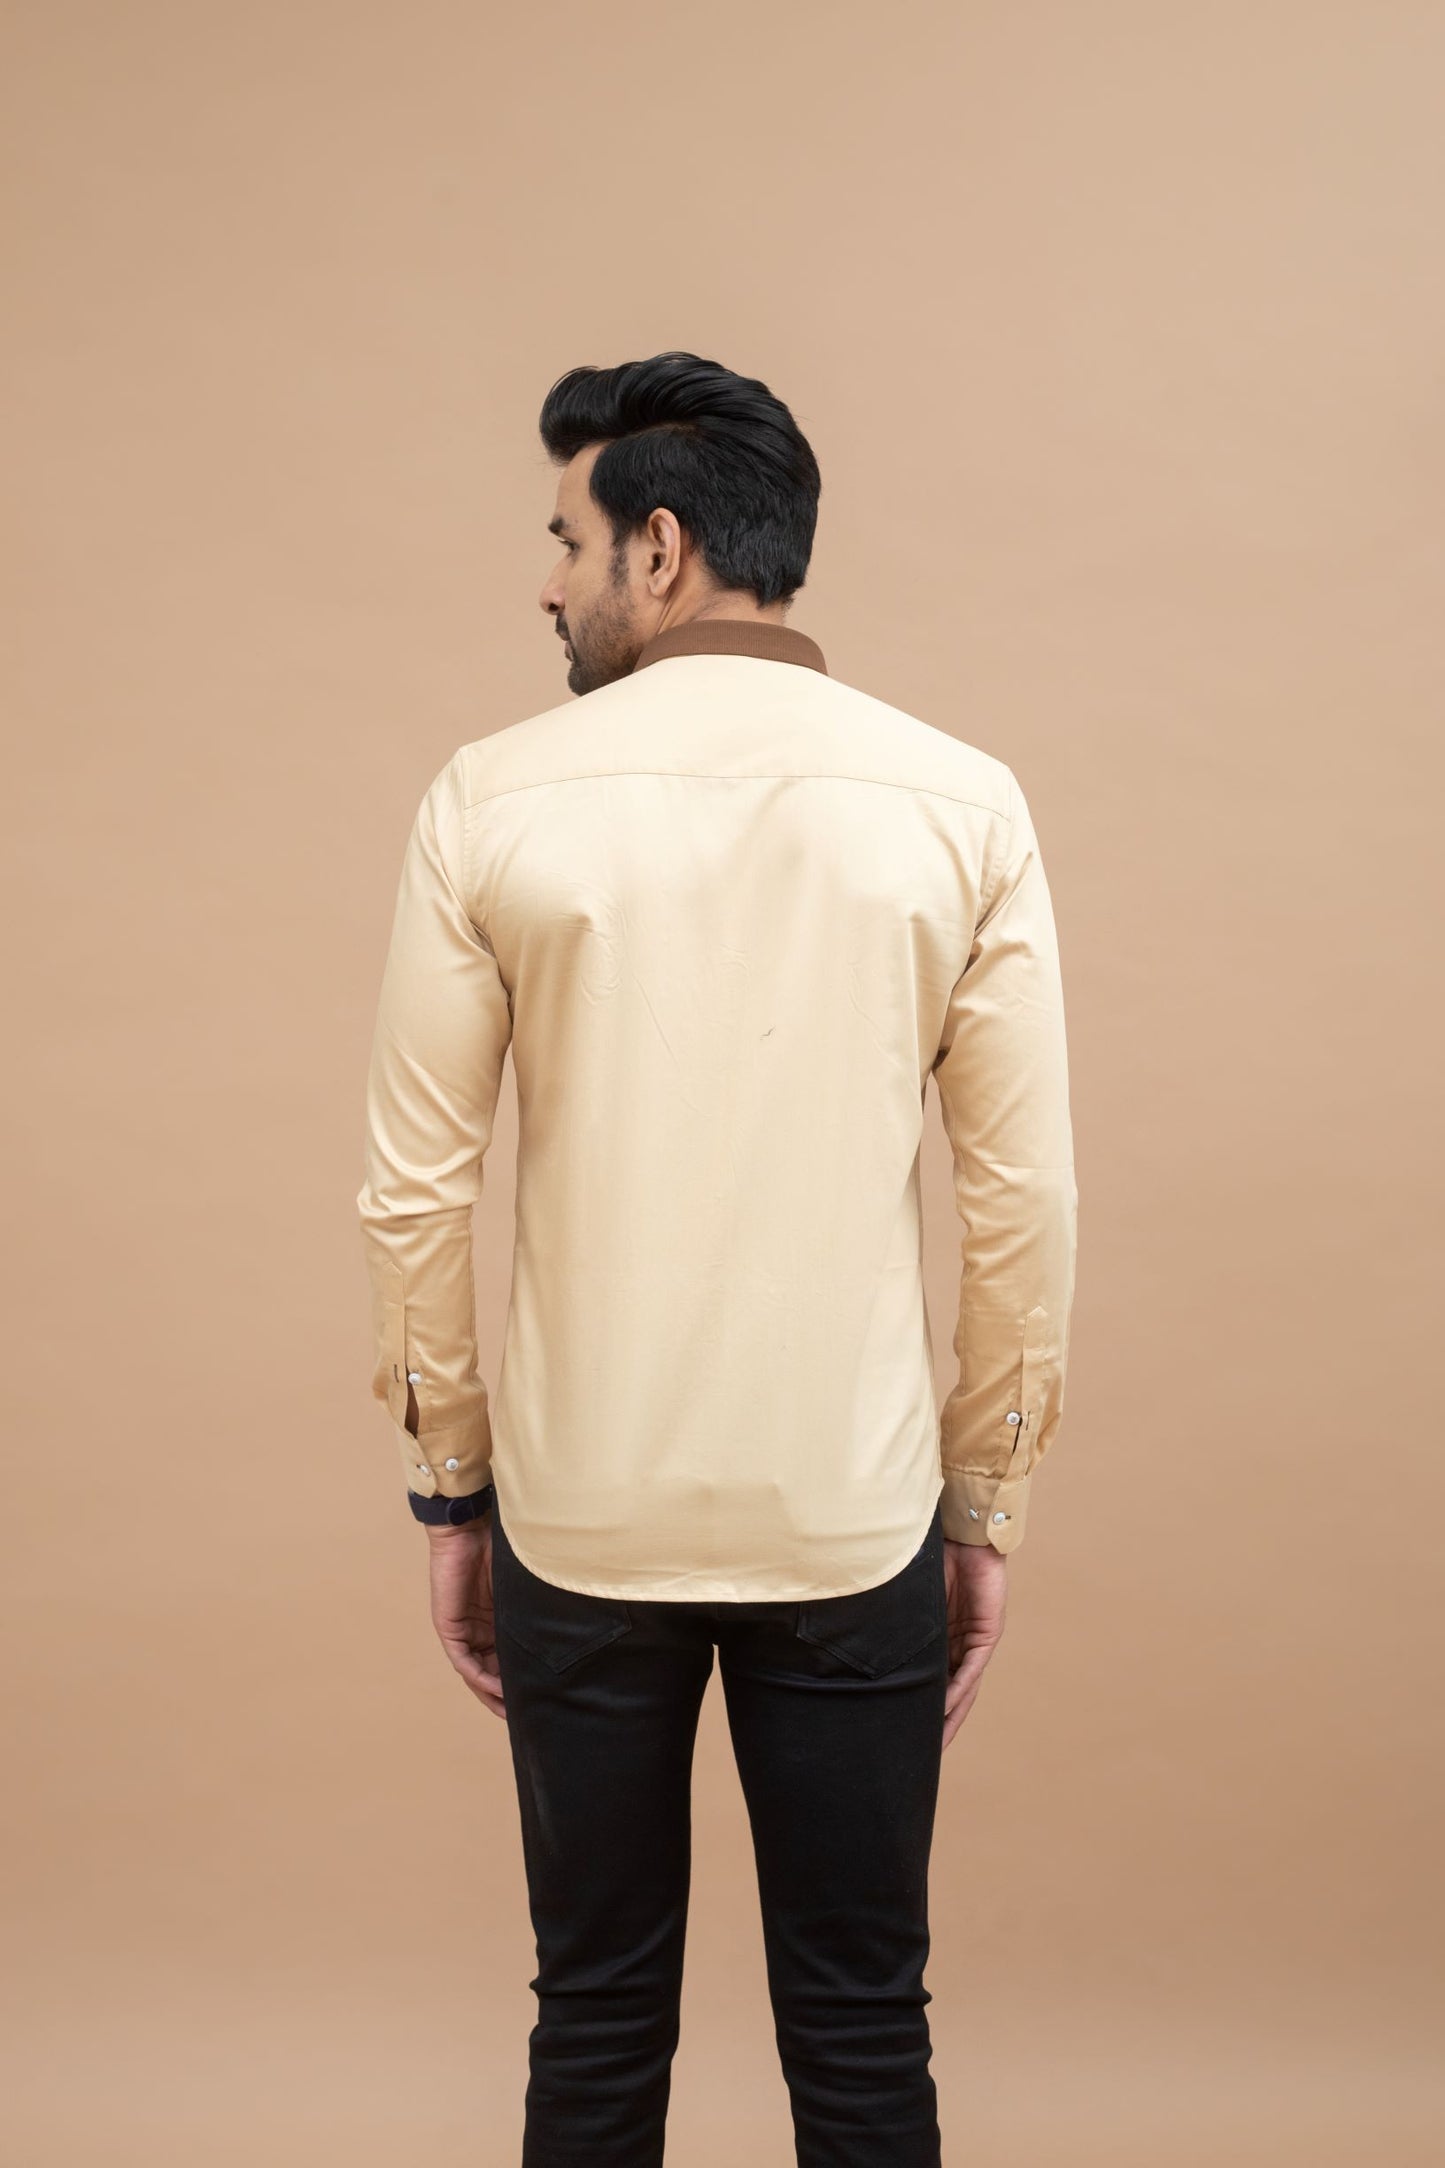 Khaki Shirt With Motif